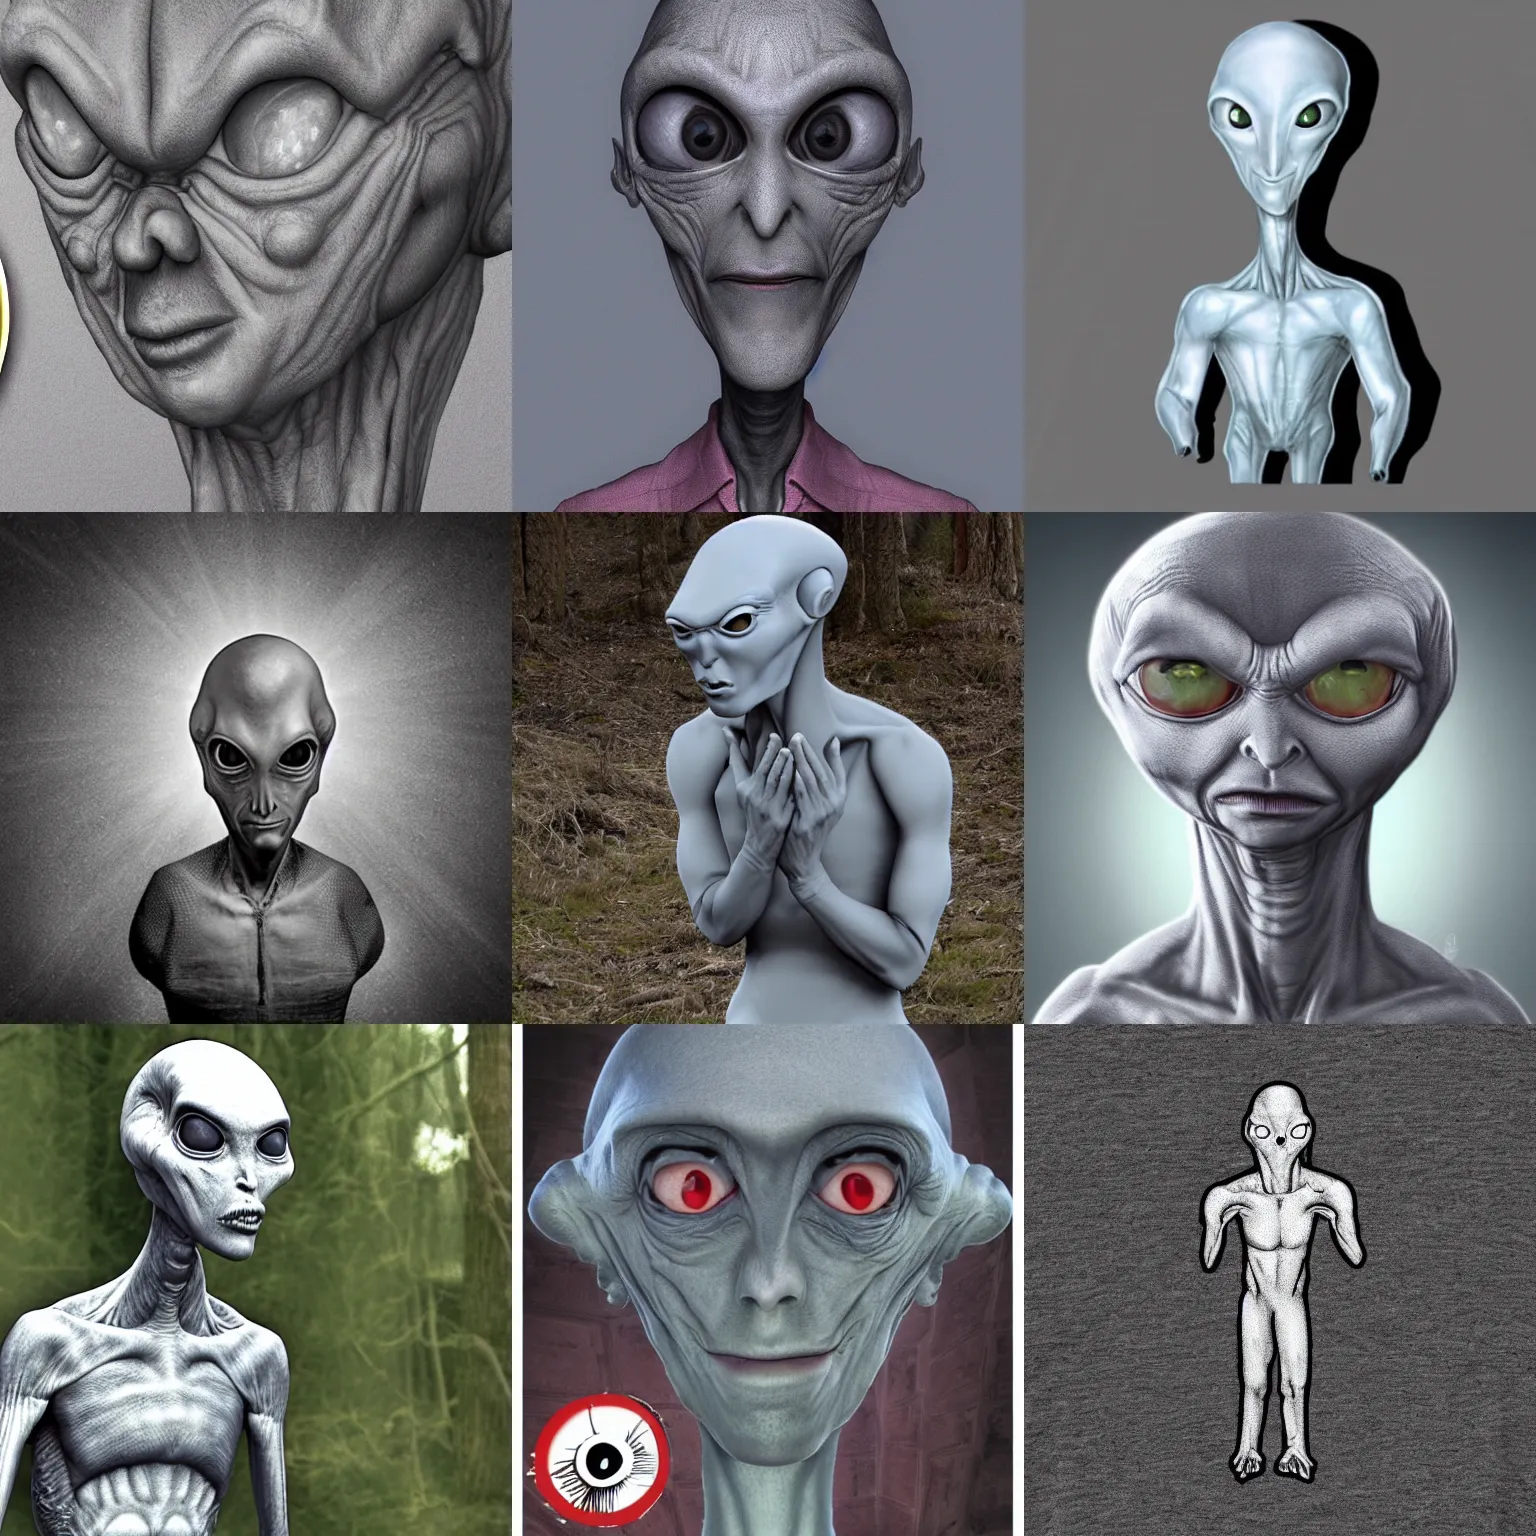 Prompt: grey alien